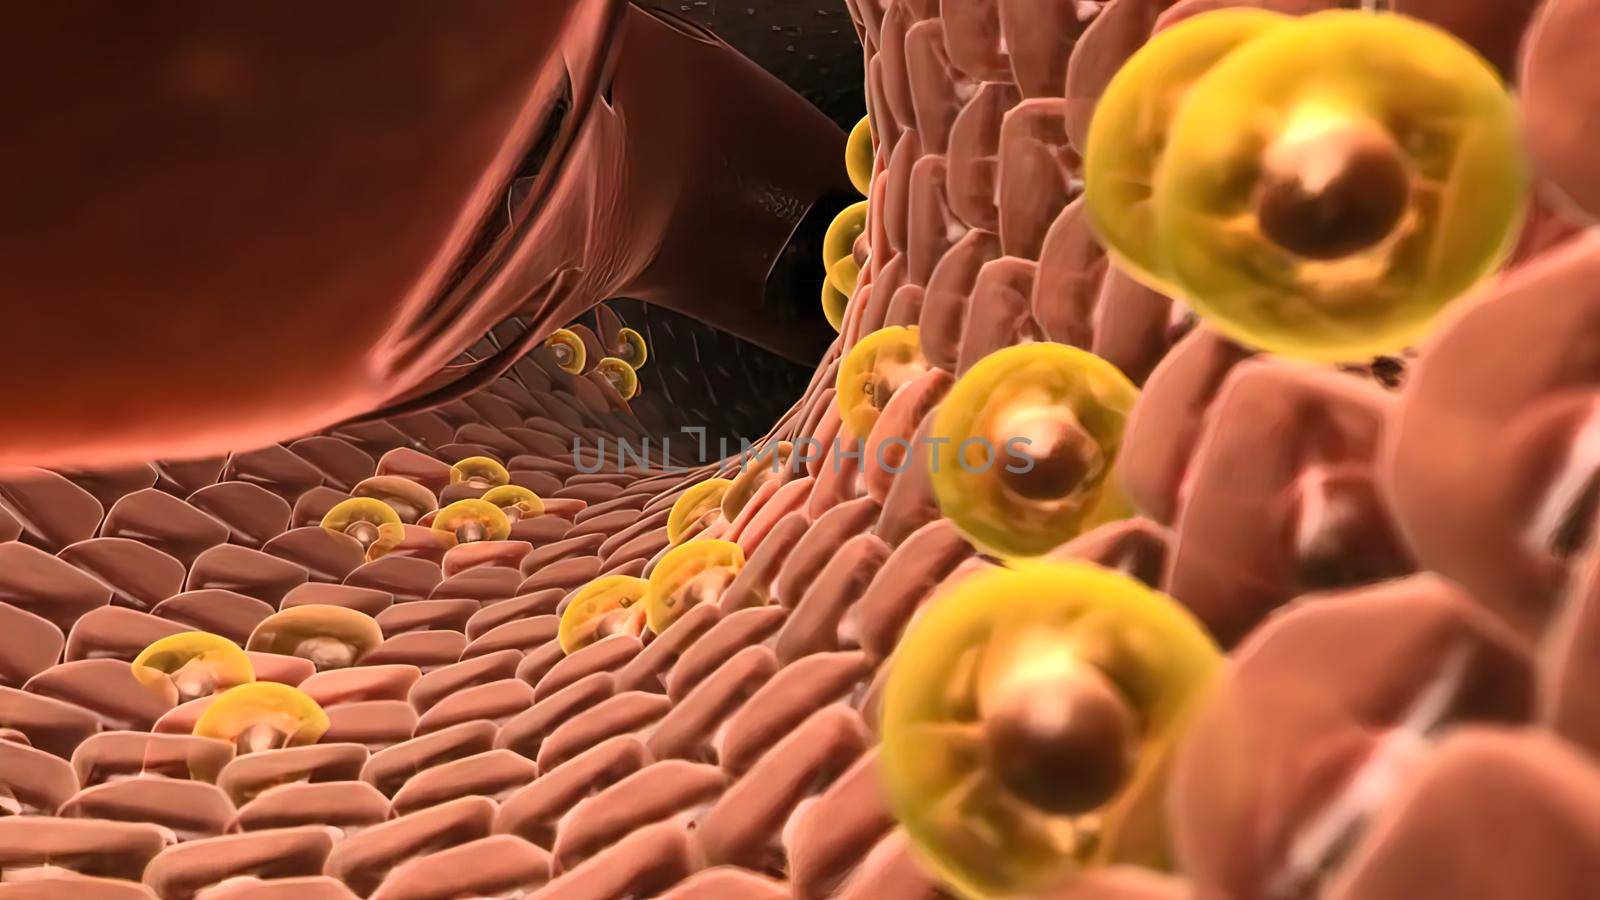 Hepastem - increase of healthy cells in liver 3D illustration